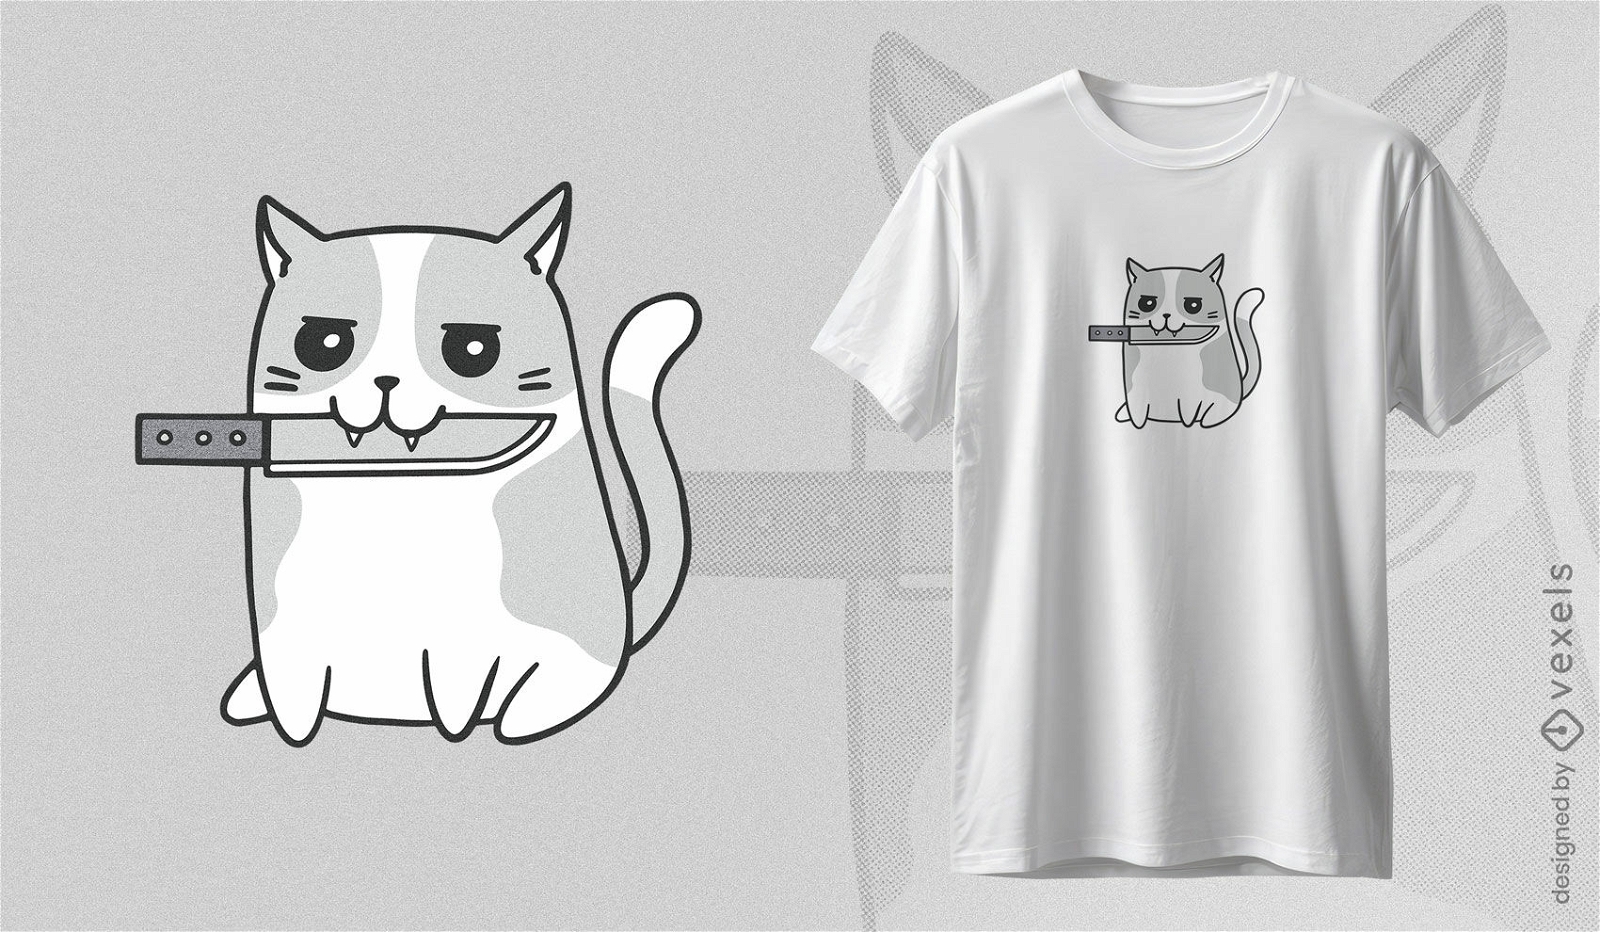 Dise?o de camiseta de gato descarado.